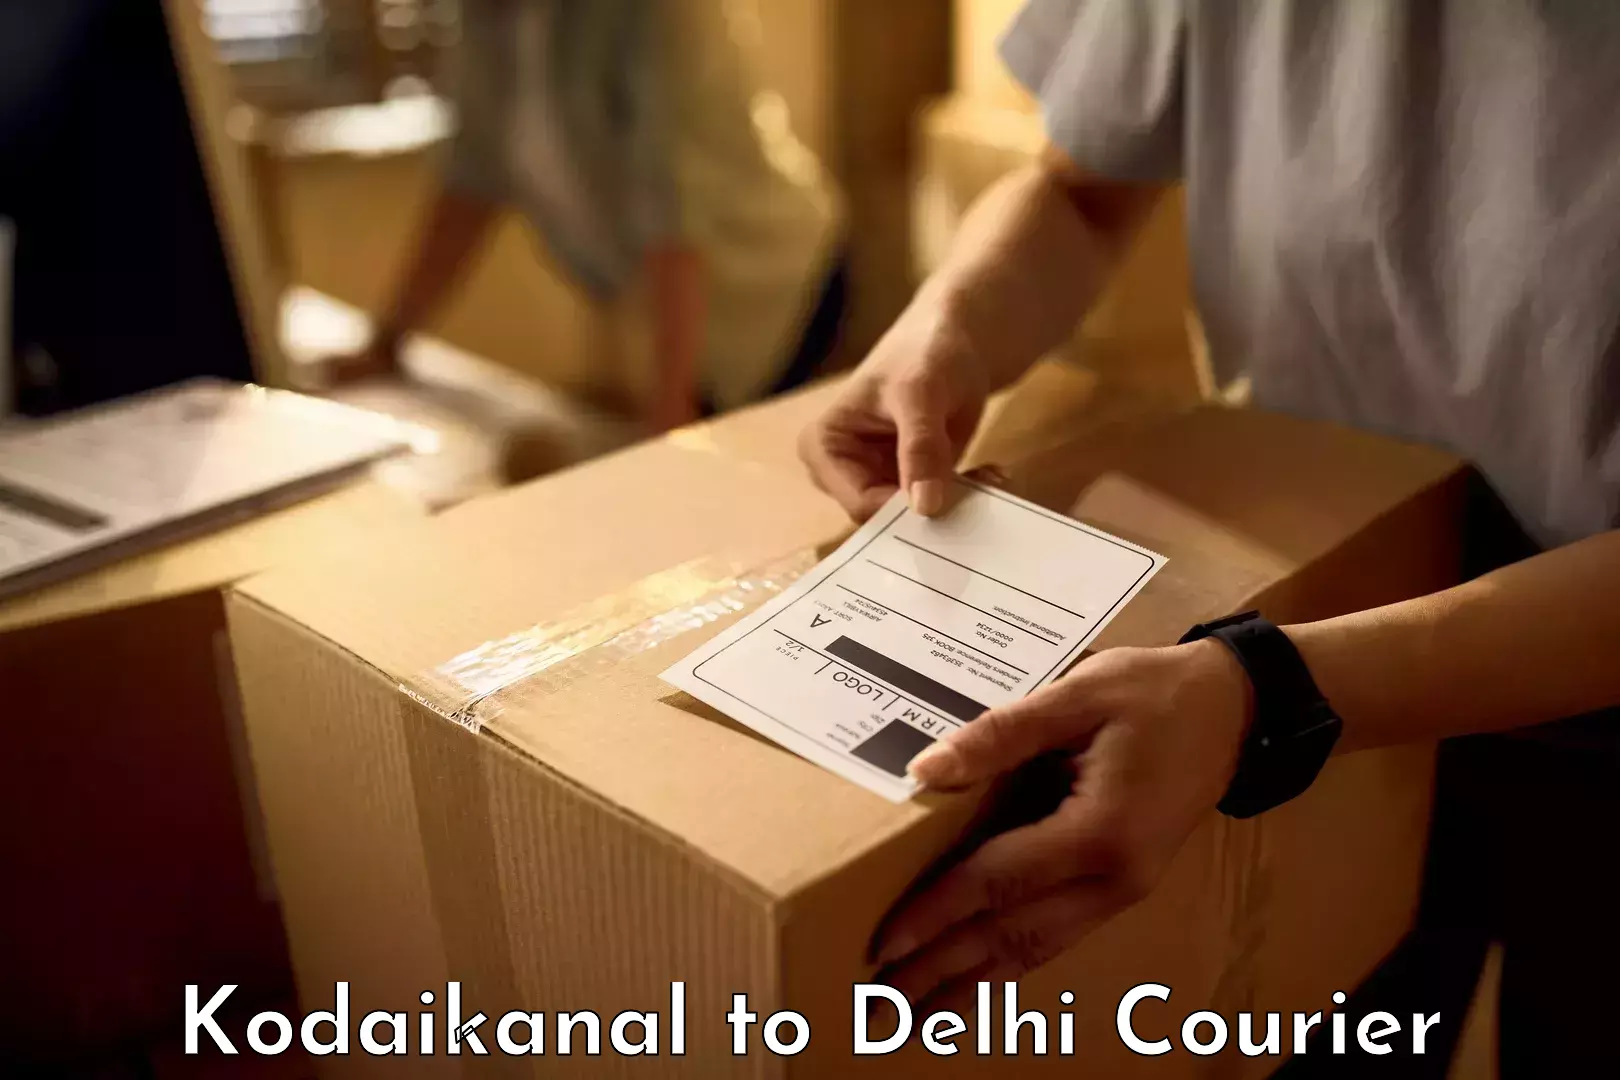 Luggage transport company Kodaikanal to University of Delhi